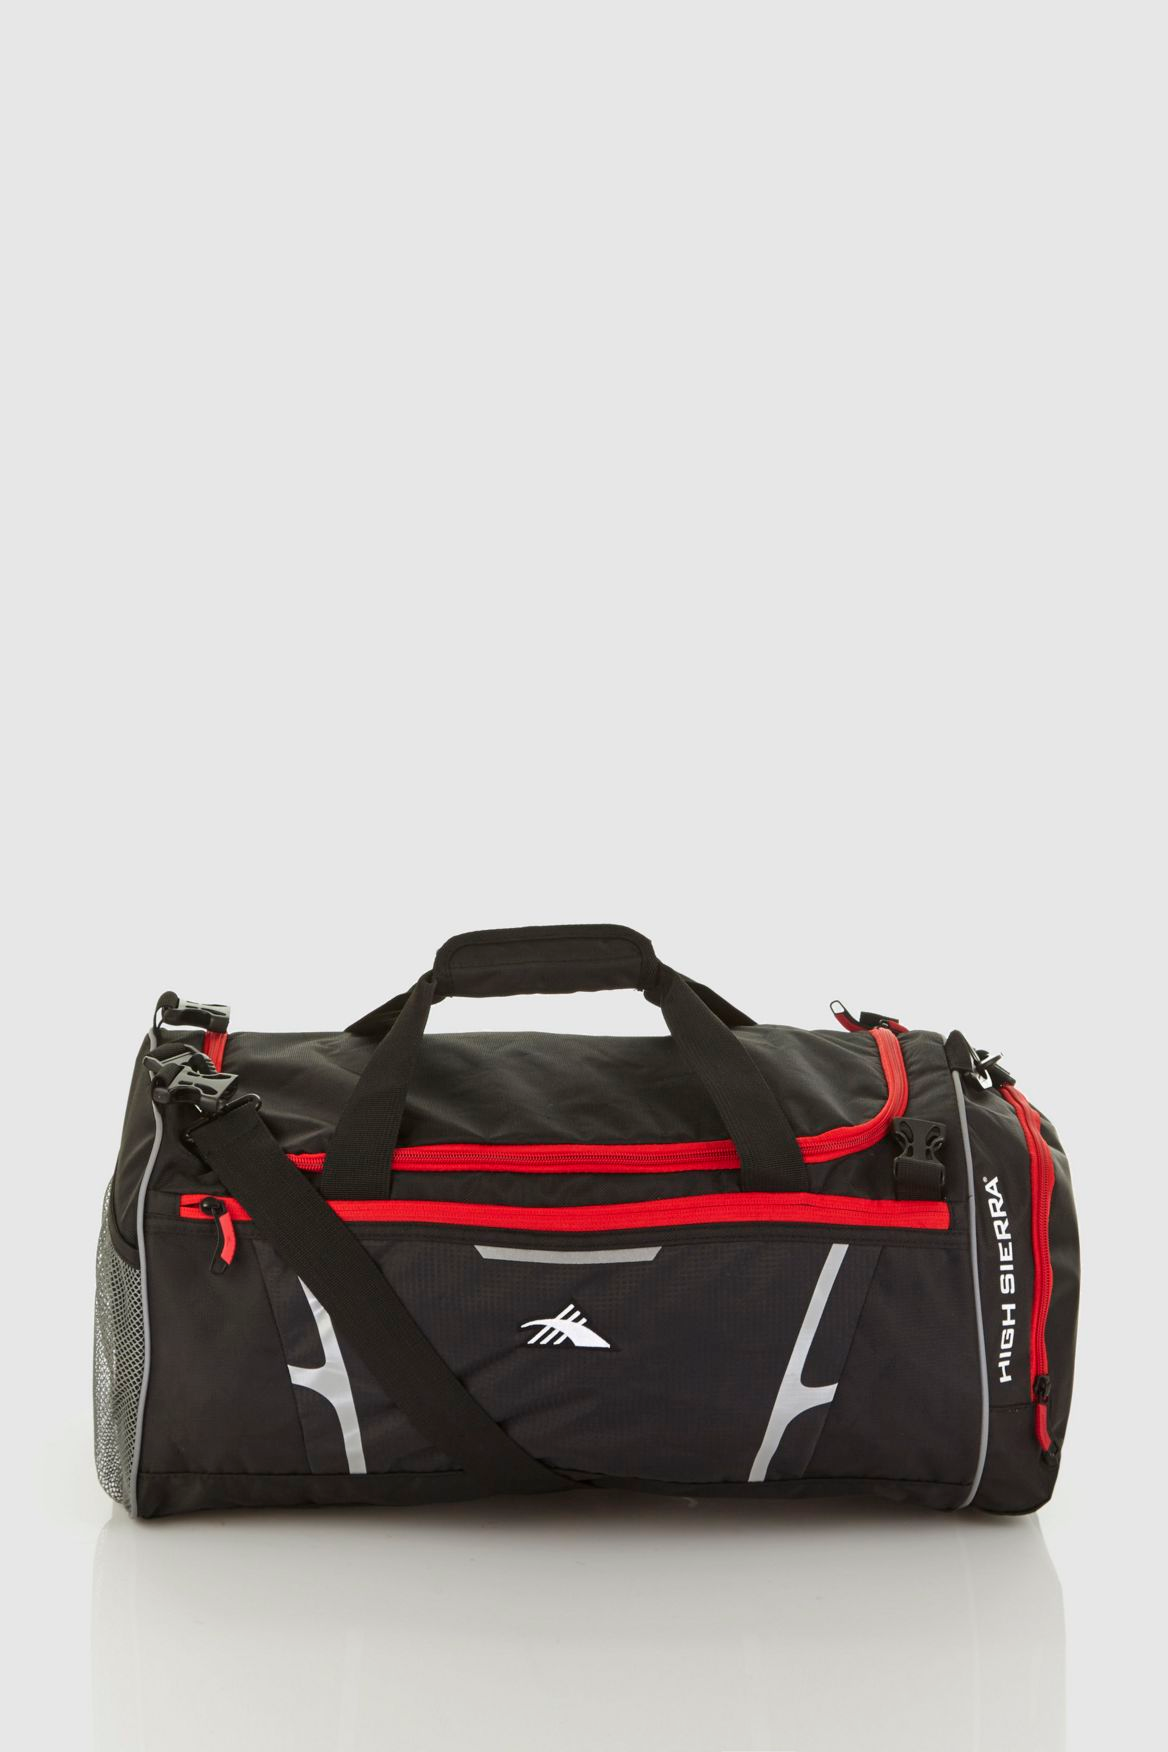 High Sierra Composite 2 in 1 Backpack Duffle Black